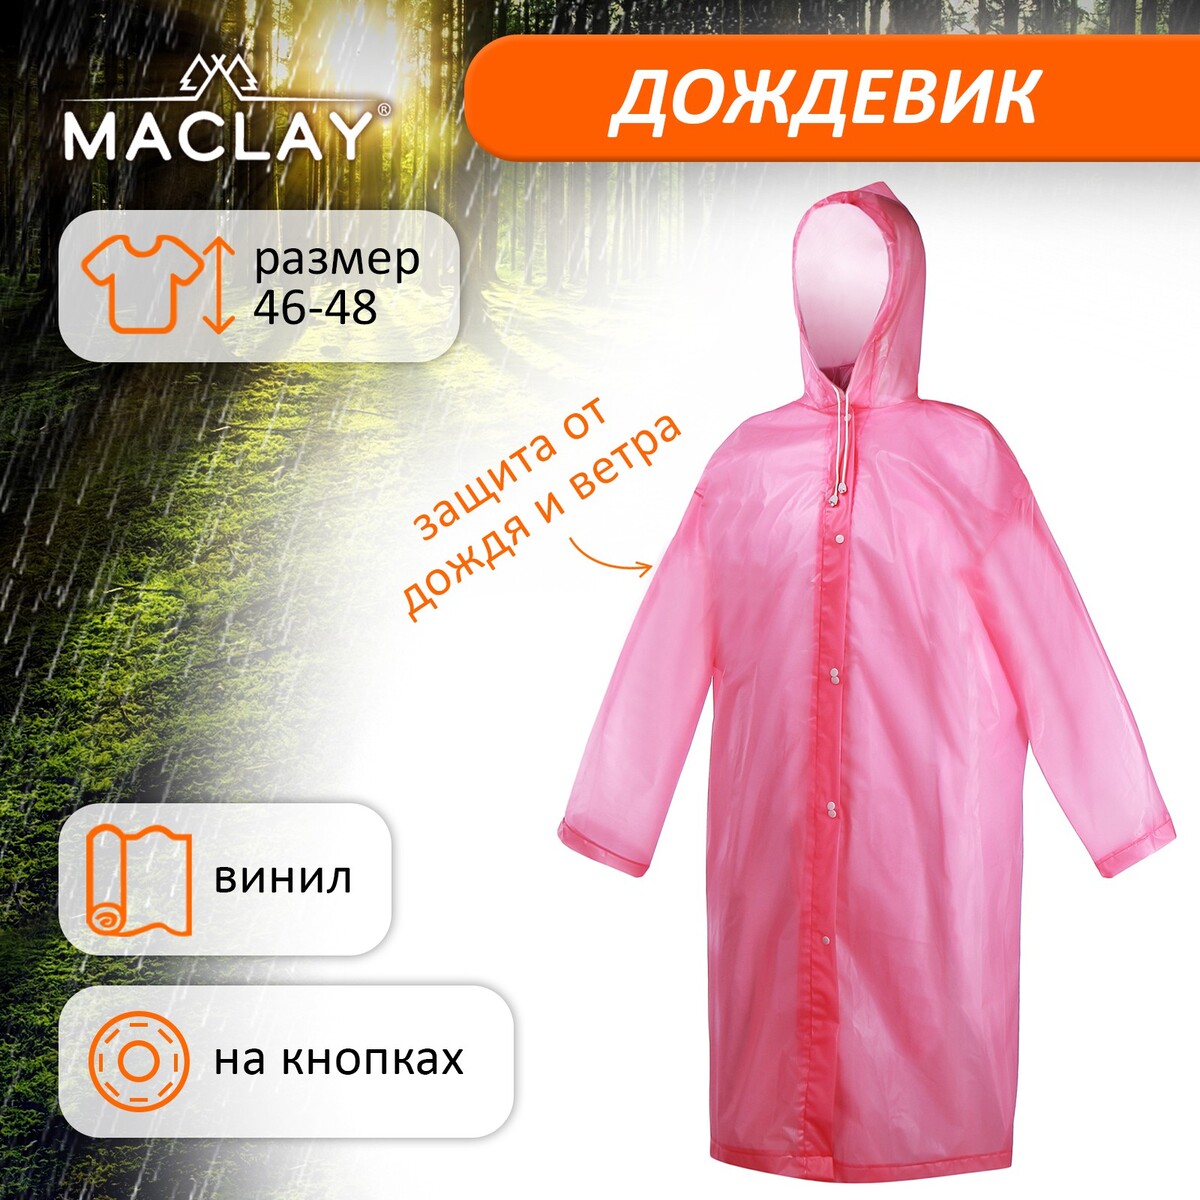 Дождевик-плащ maclay, р. 46-48, цвет розовый дождевик лотос 7